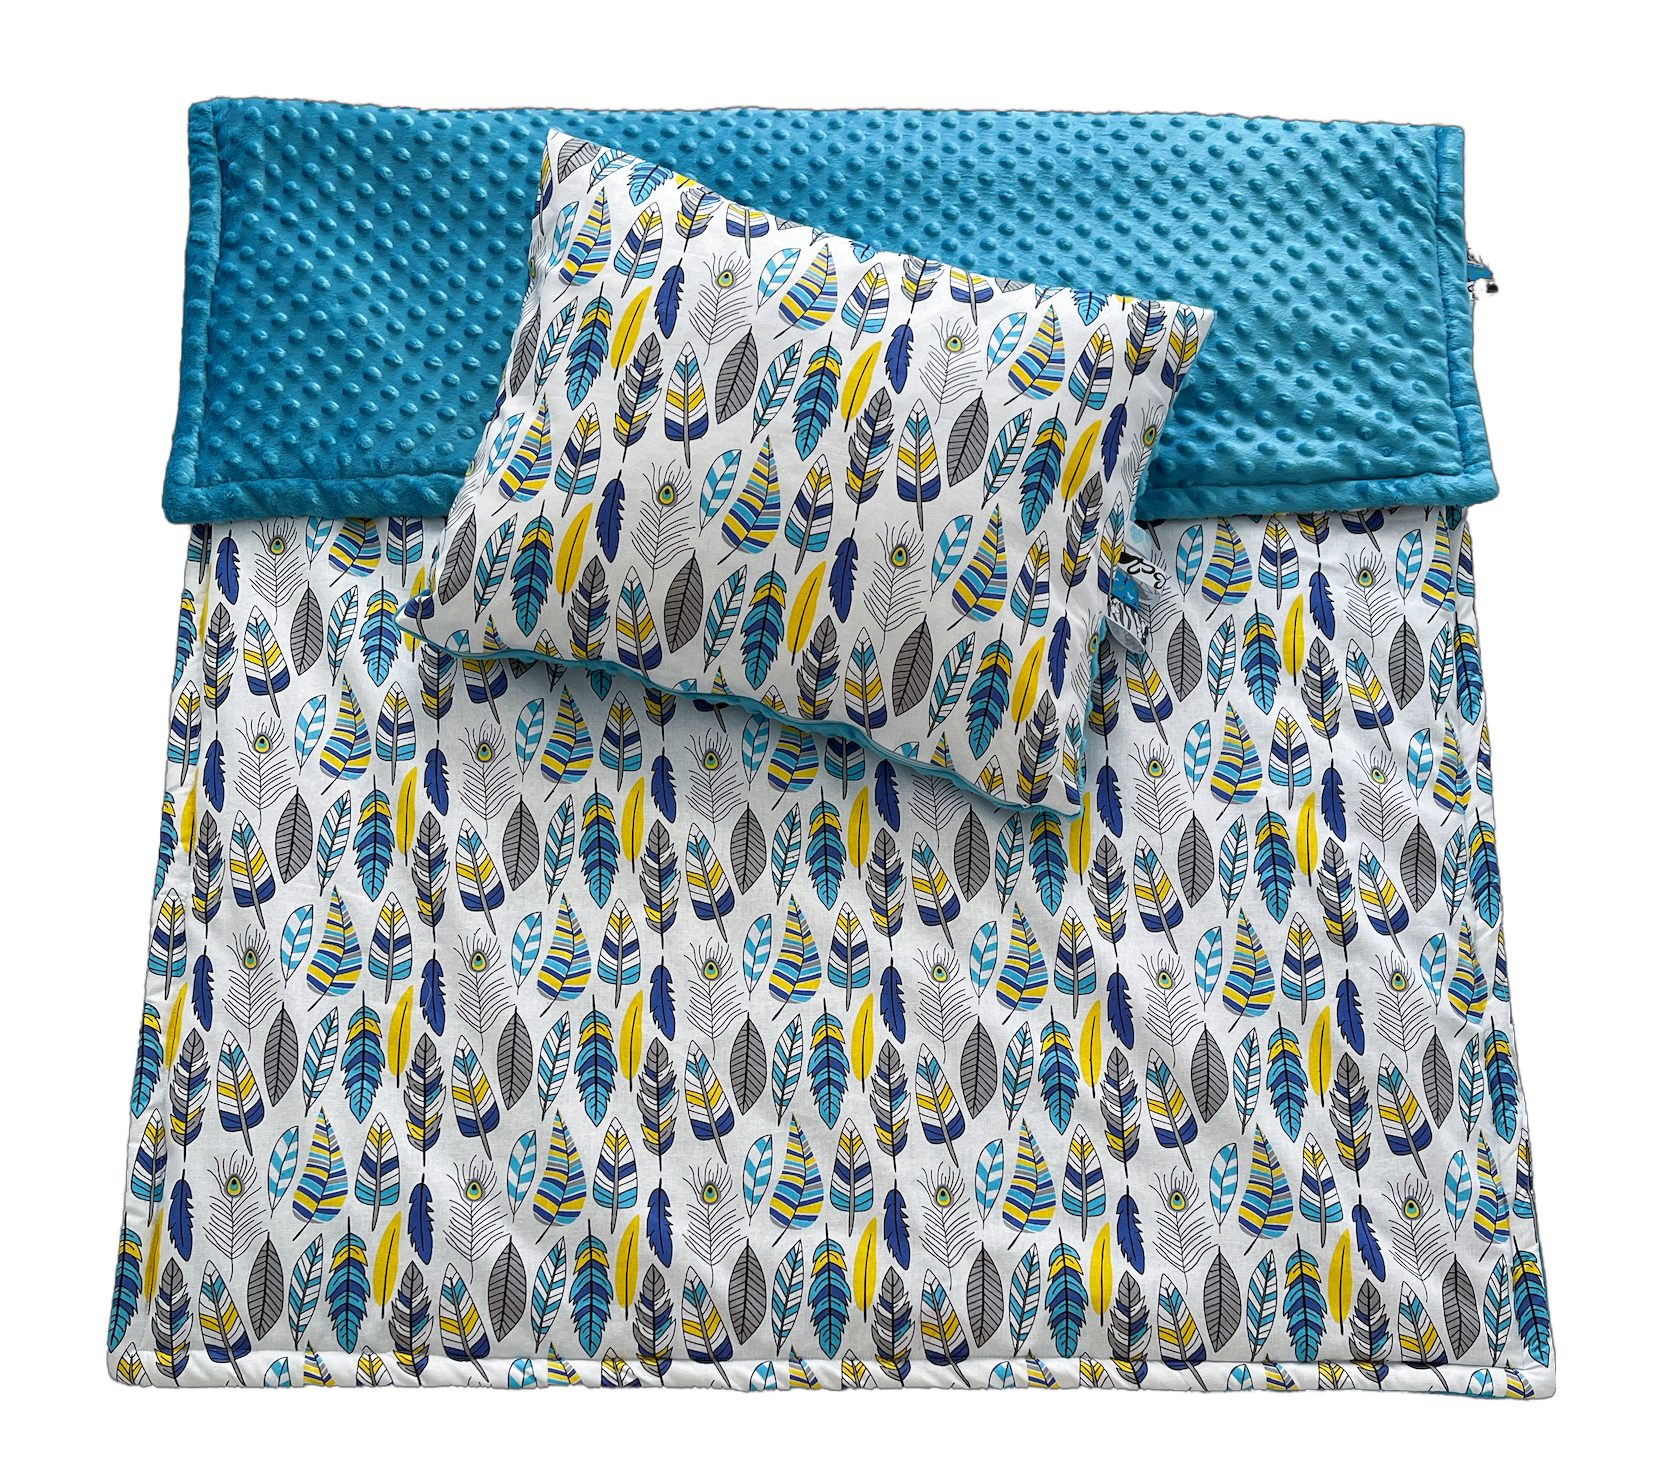 Kinderdecke Kinderdecke Krabbeldecke 100x135cm Bänder RoKo-Textilien, Kinderbettdecke mit mit Kopfkissen 40x50cm